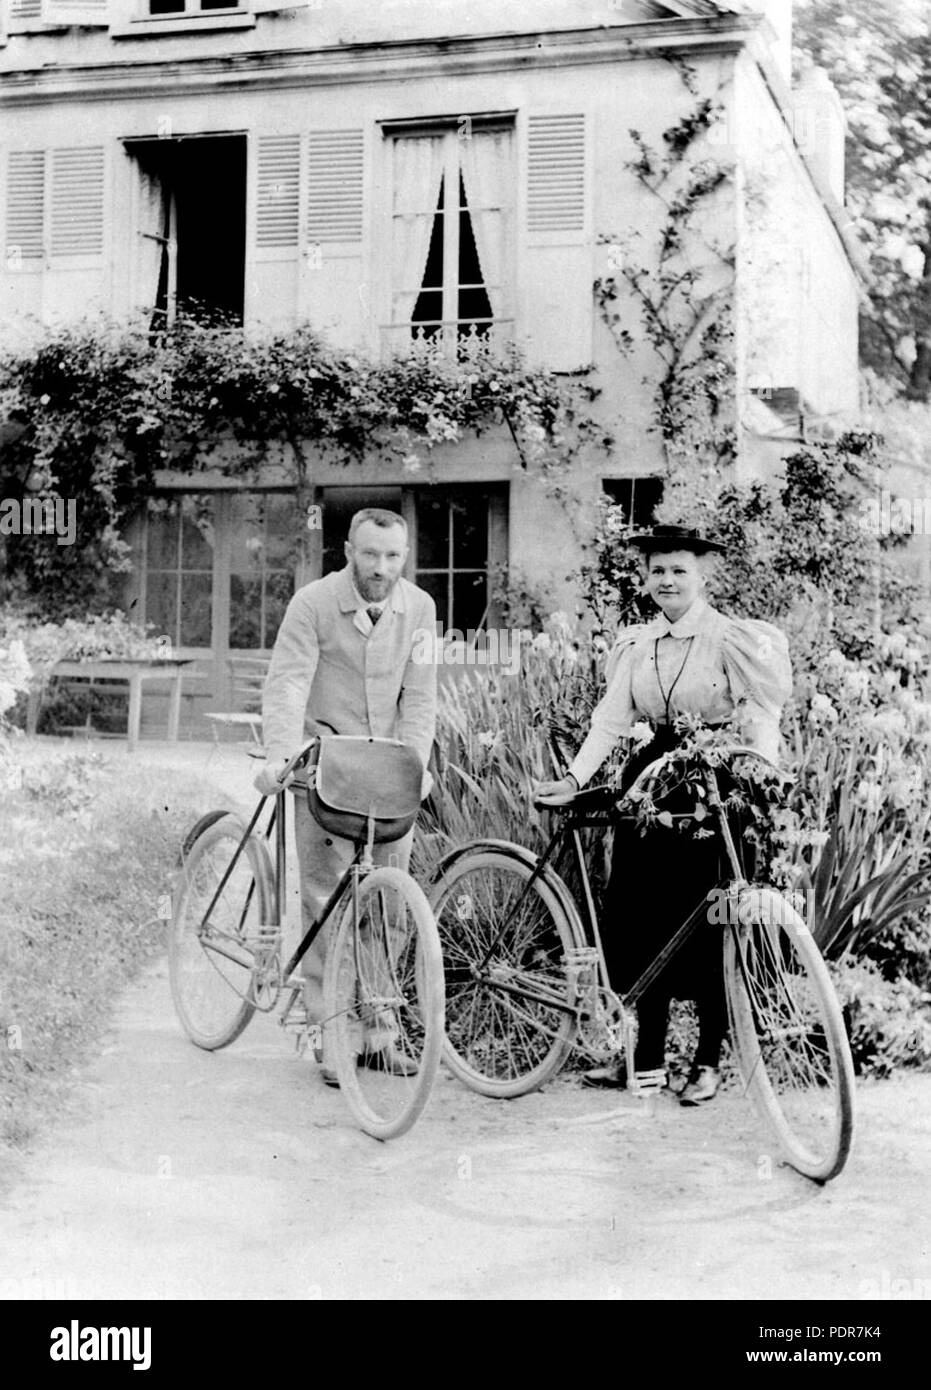 20 Pierre et Marie Curie devant leur maison de Sceaux en 1895 Foto Stock